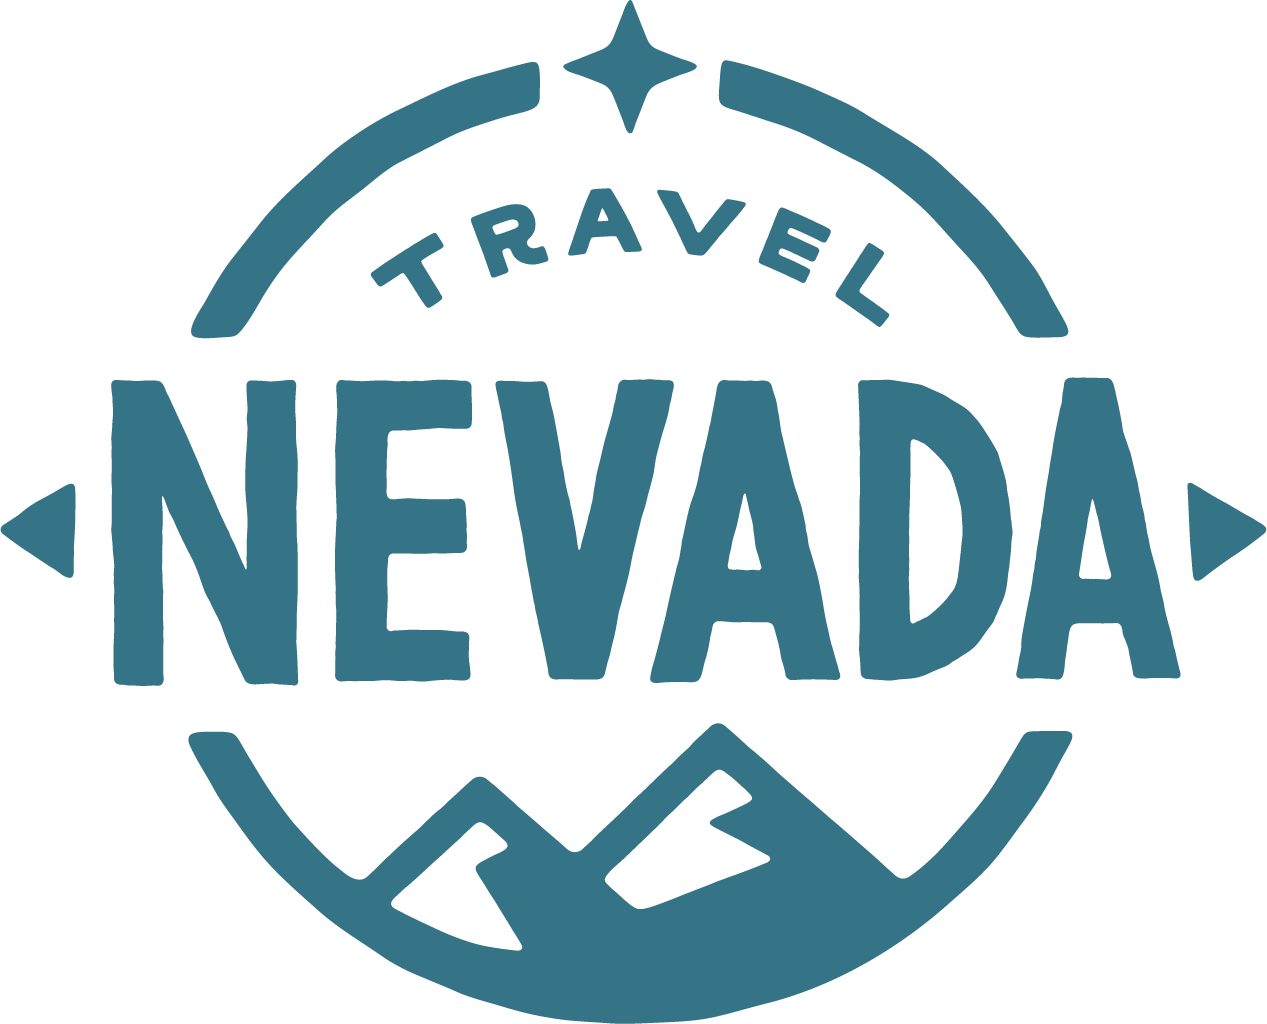 Nevada Division of Tourism/ Travel Nevada